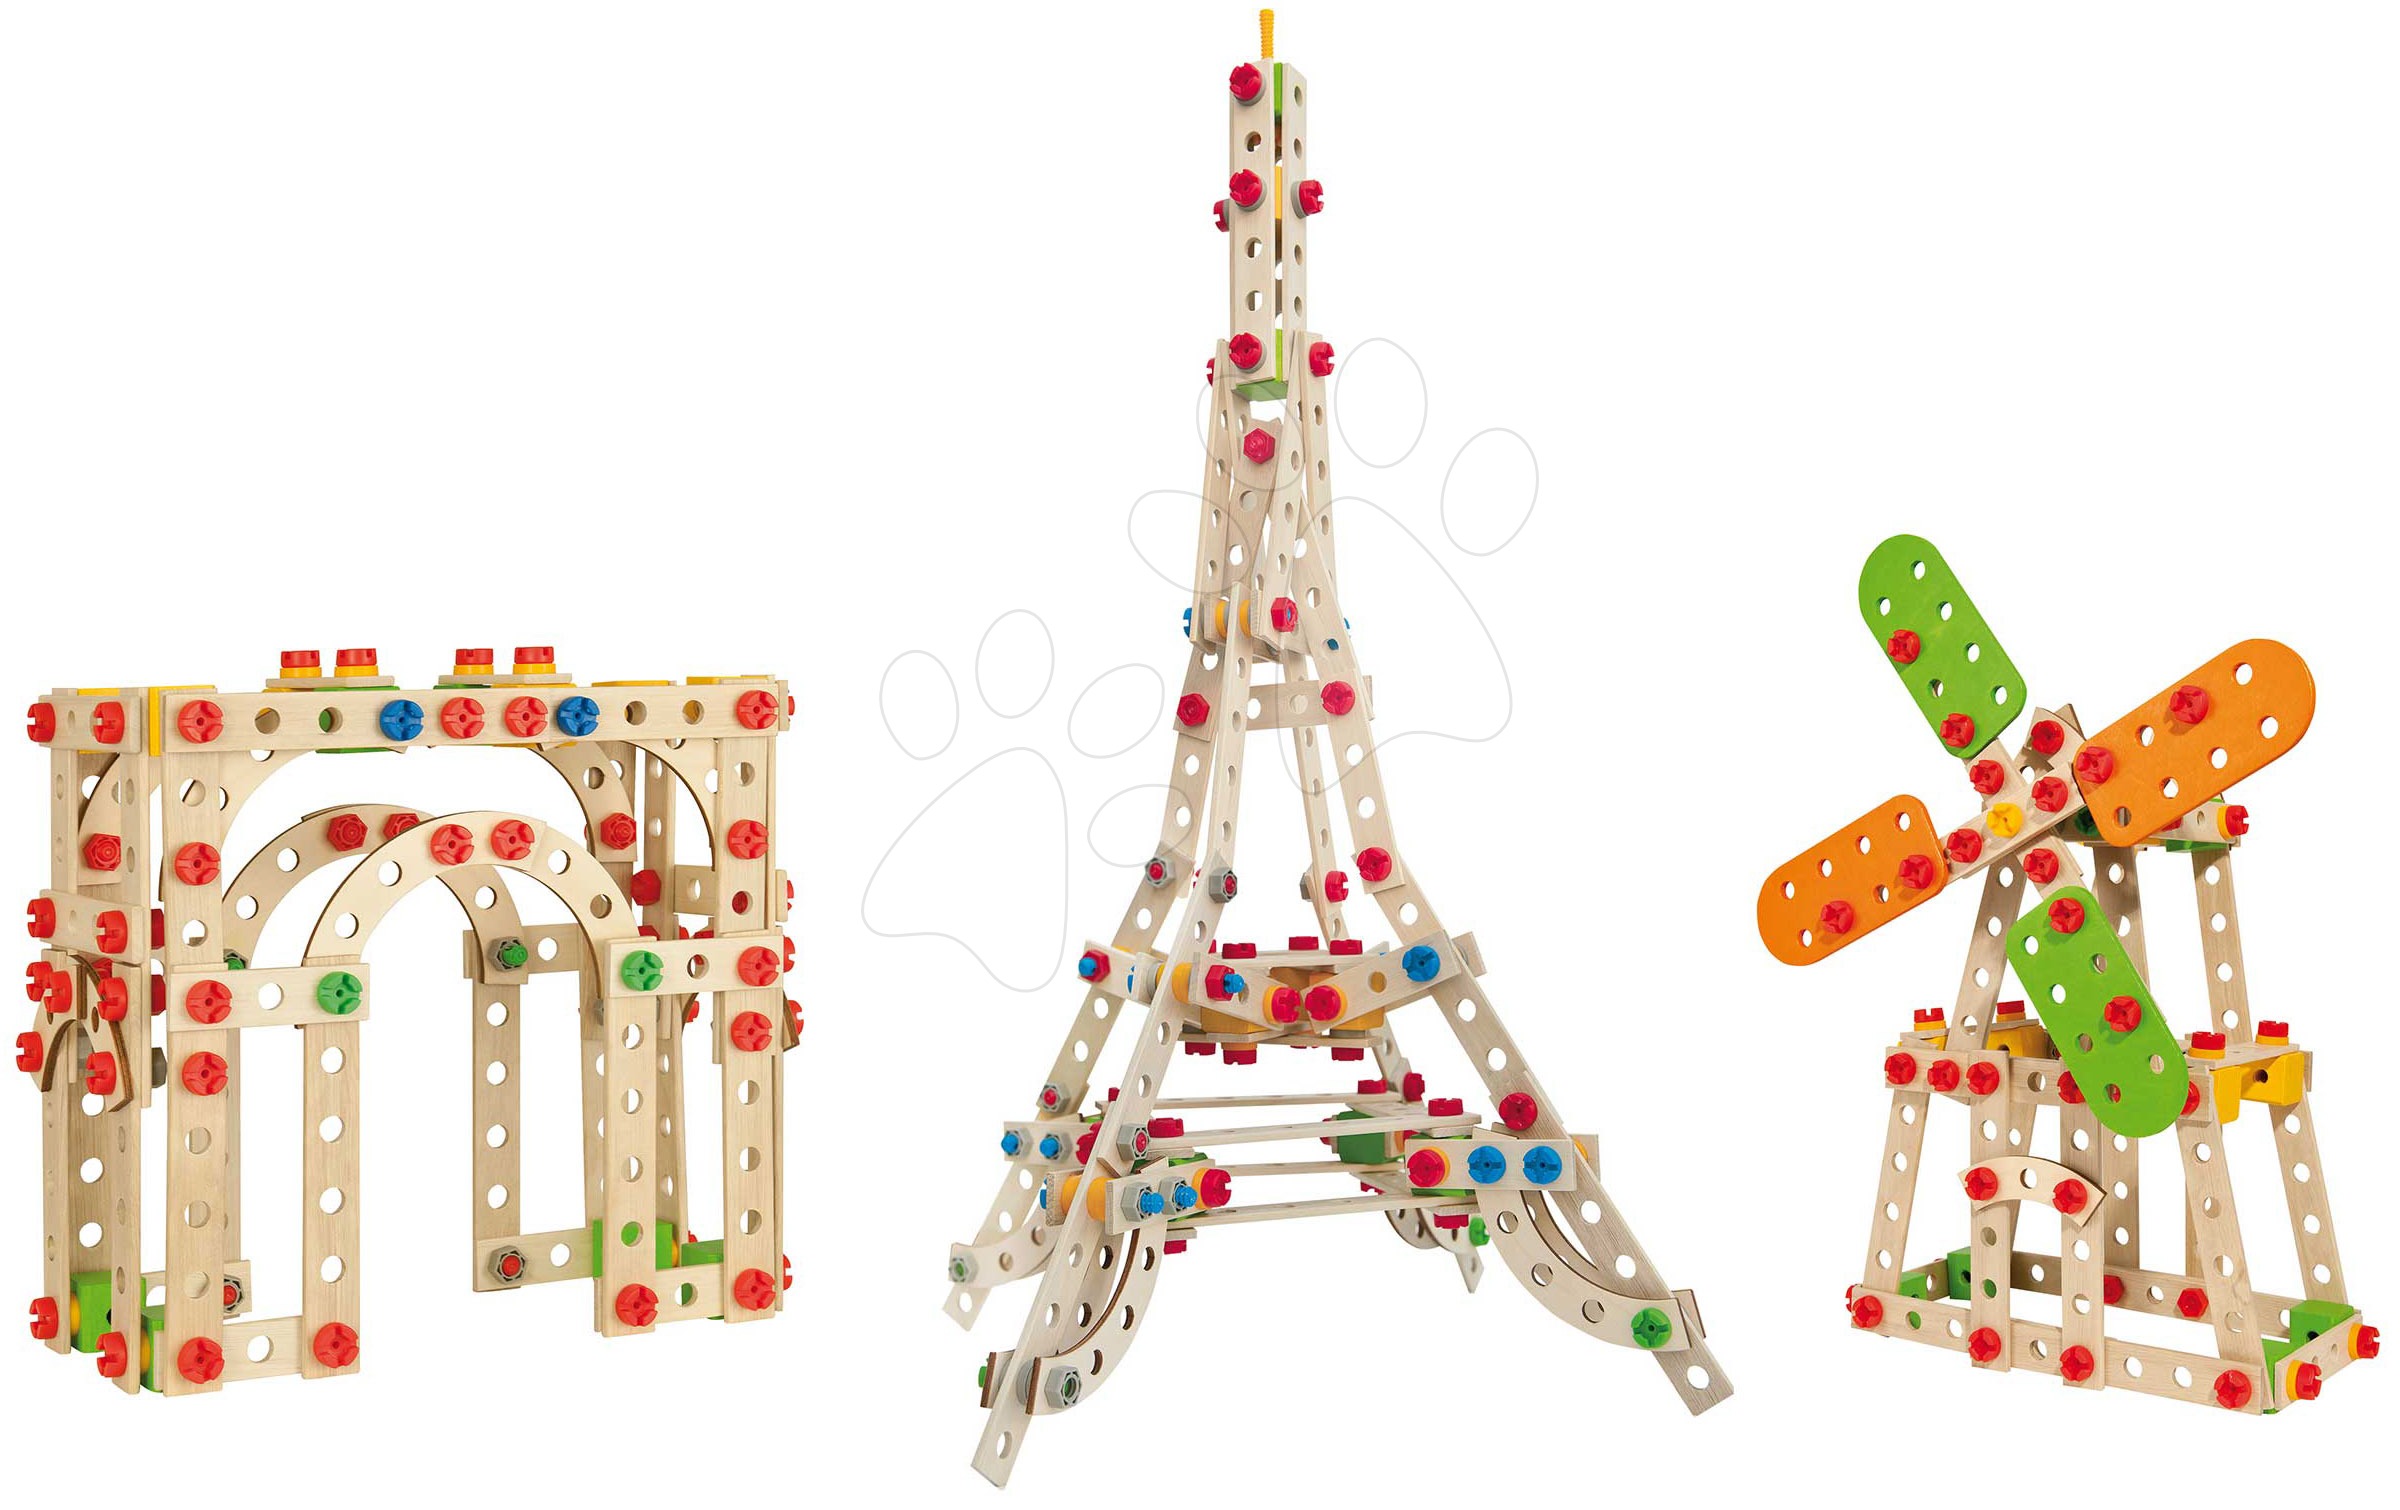 Fa építőjátékok Eichhorn - Fa építőjáték Eiffel-torony Constructor Eiffel Tower Eichhorn 3 modell (Eiffel-torony, szélmalom, Diadalív) 315 darabos 6 évtől